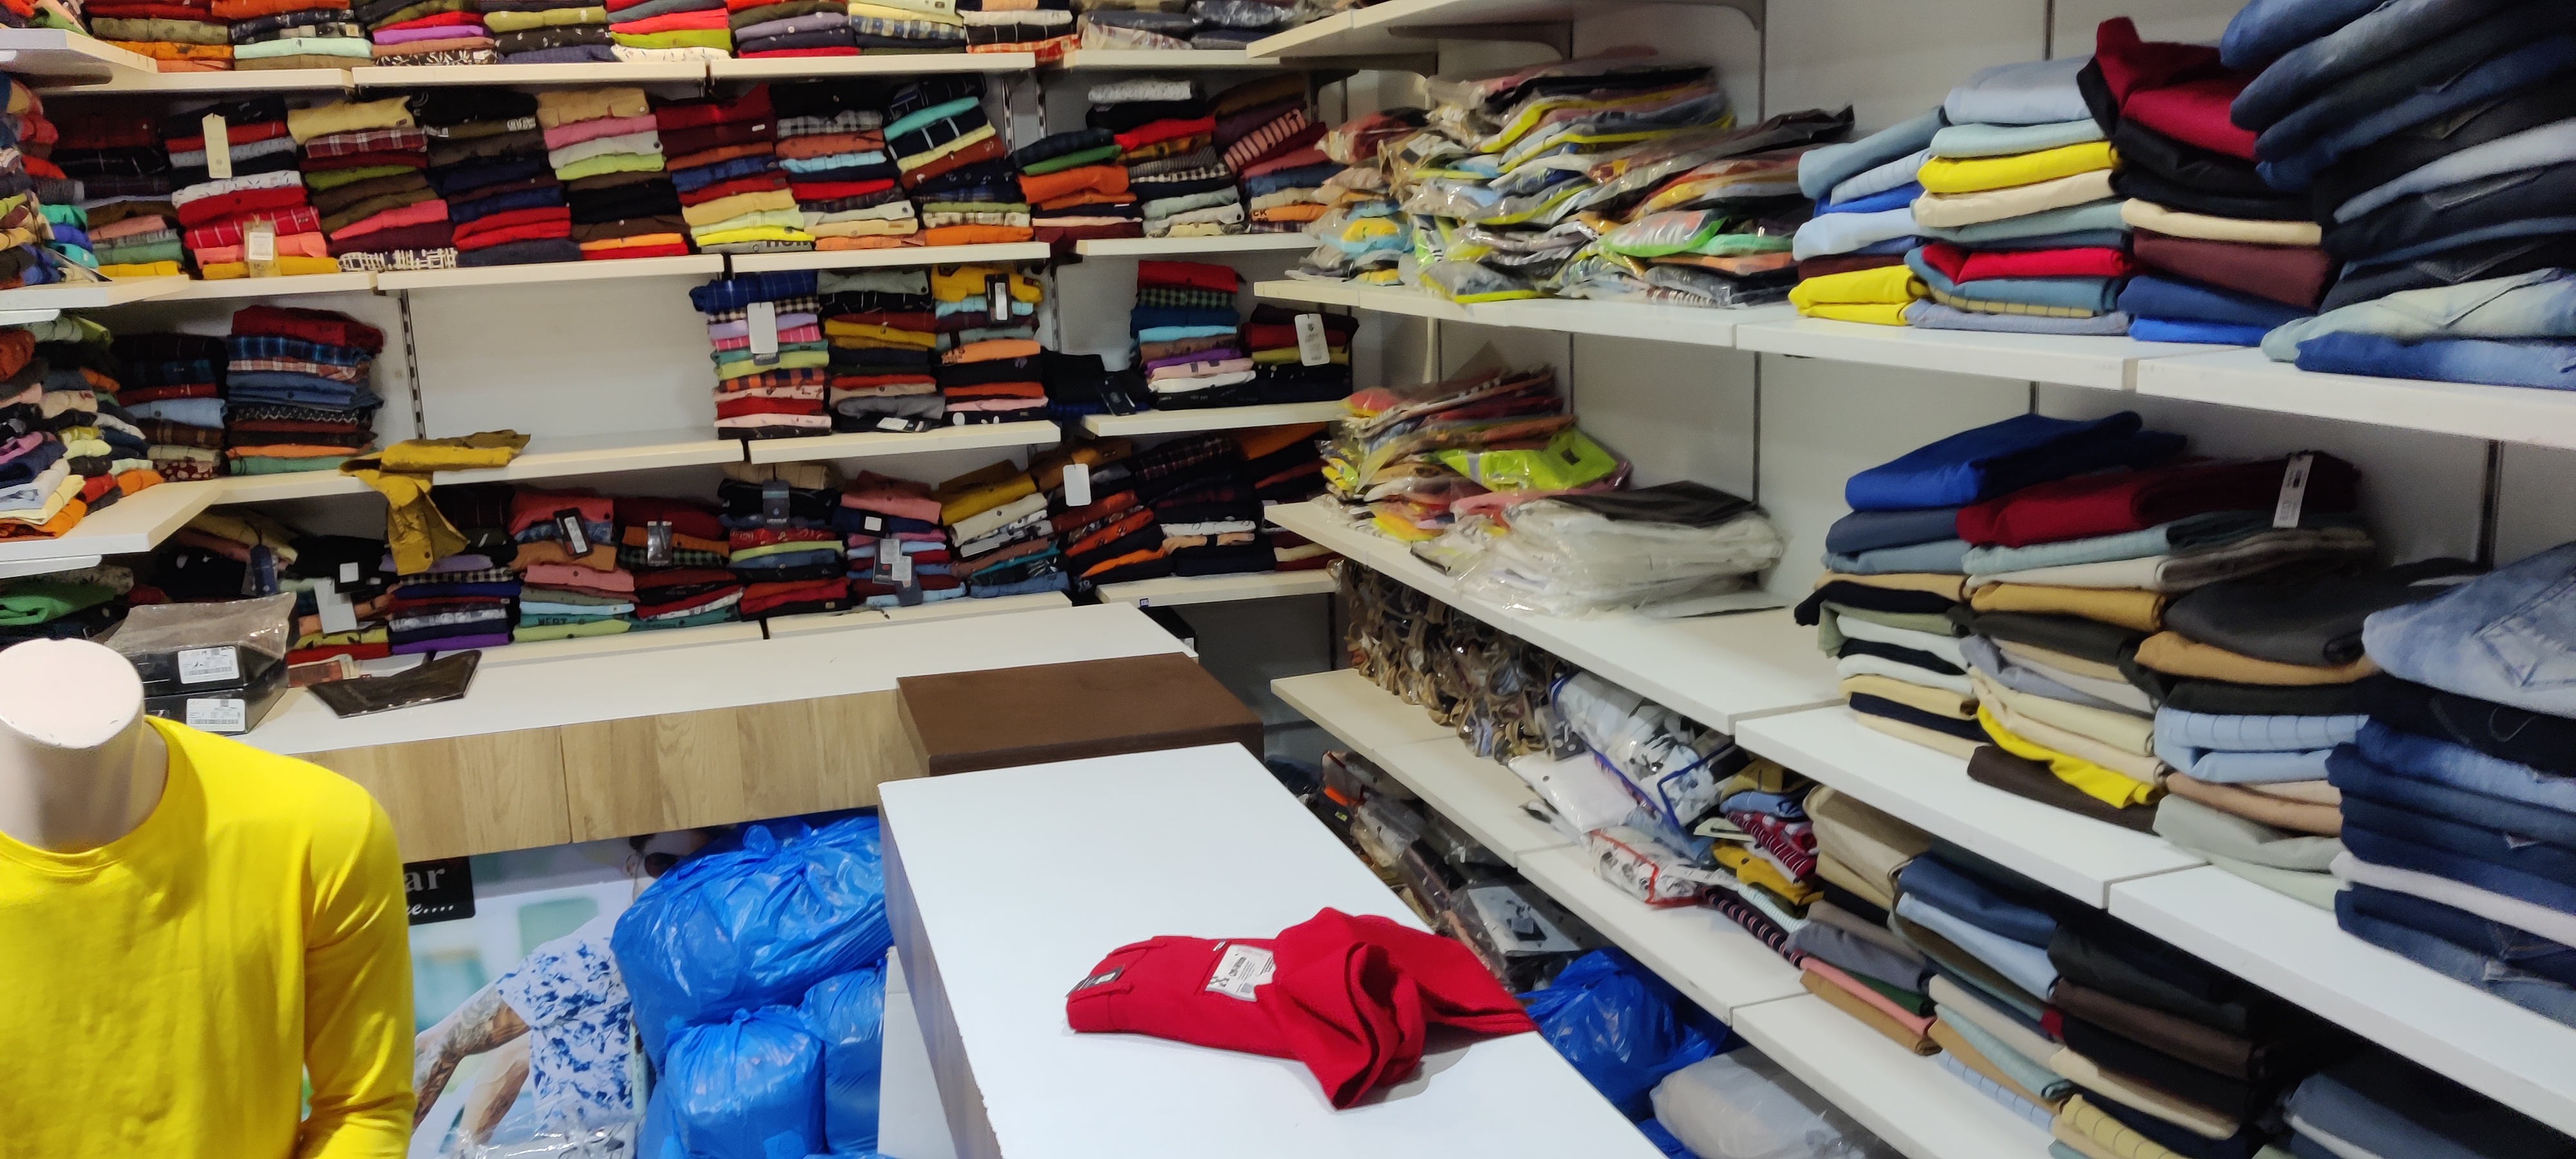 theft news : कपड़े की दुकान से जींस, शर्ट, लोअर और परफ्यूम चोरी